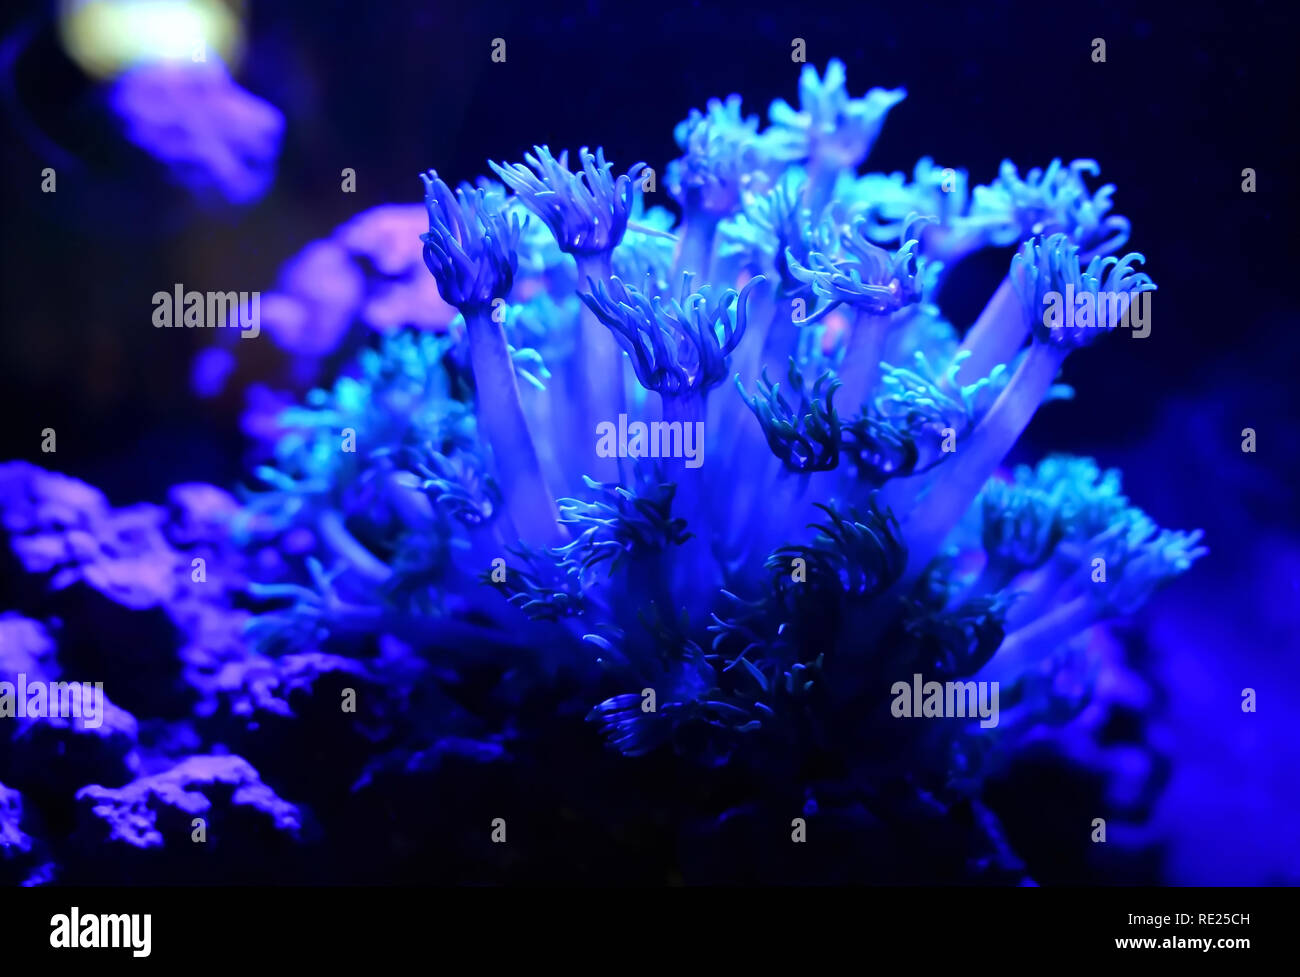 Acqua salata acquario coralli molli ondeggianti sotto acquario blue moonlight illuminazione a LED. Foto Stock